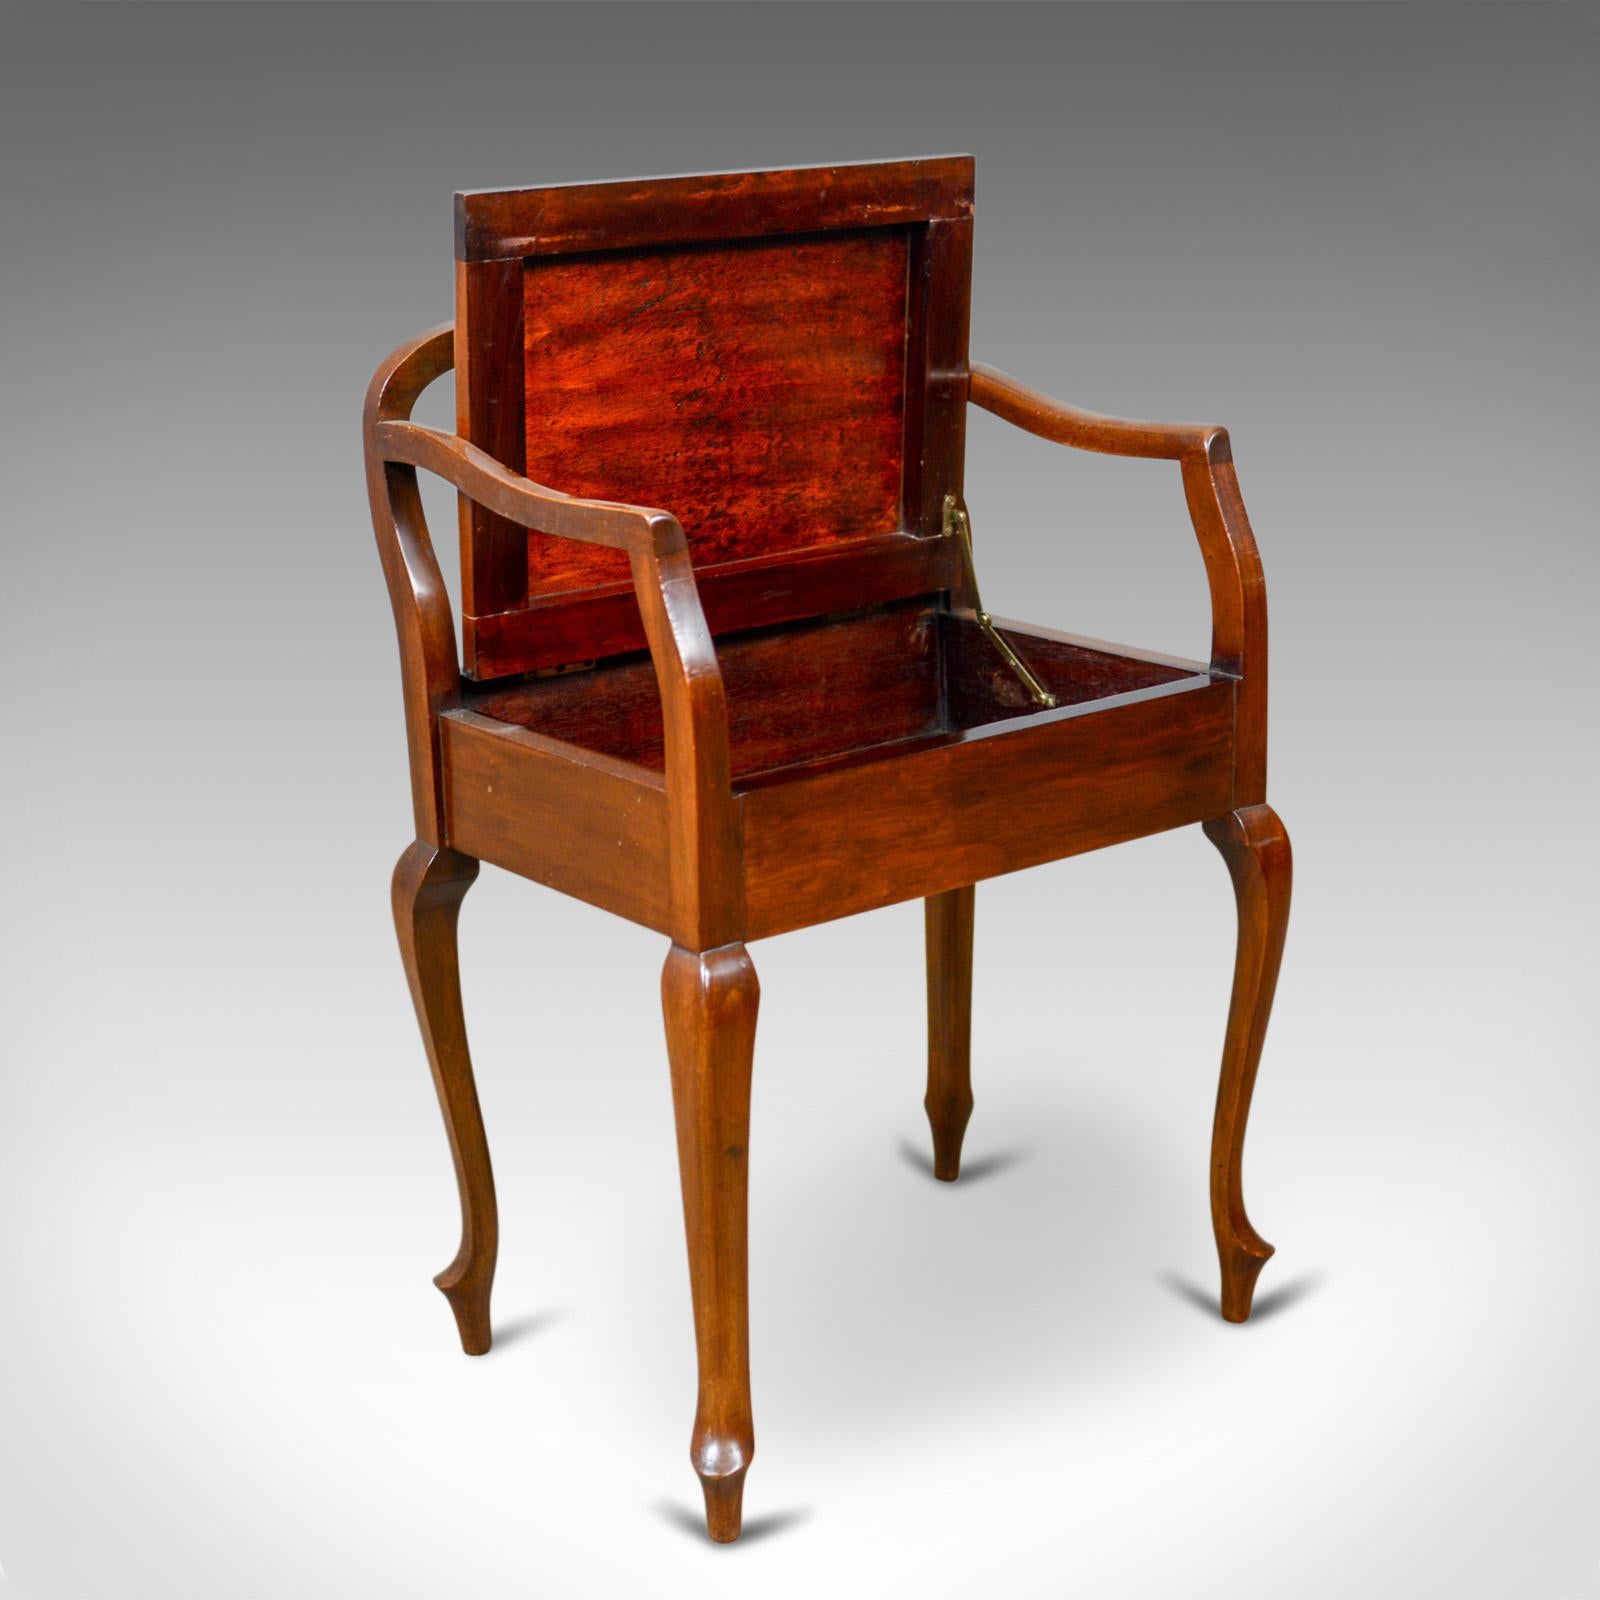 Antique Music Stool, English, Edwardian, Mahogany, Piano Seat, Needlepoint 1